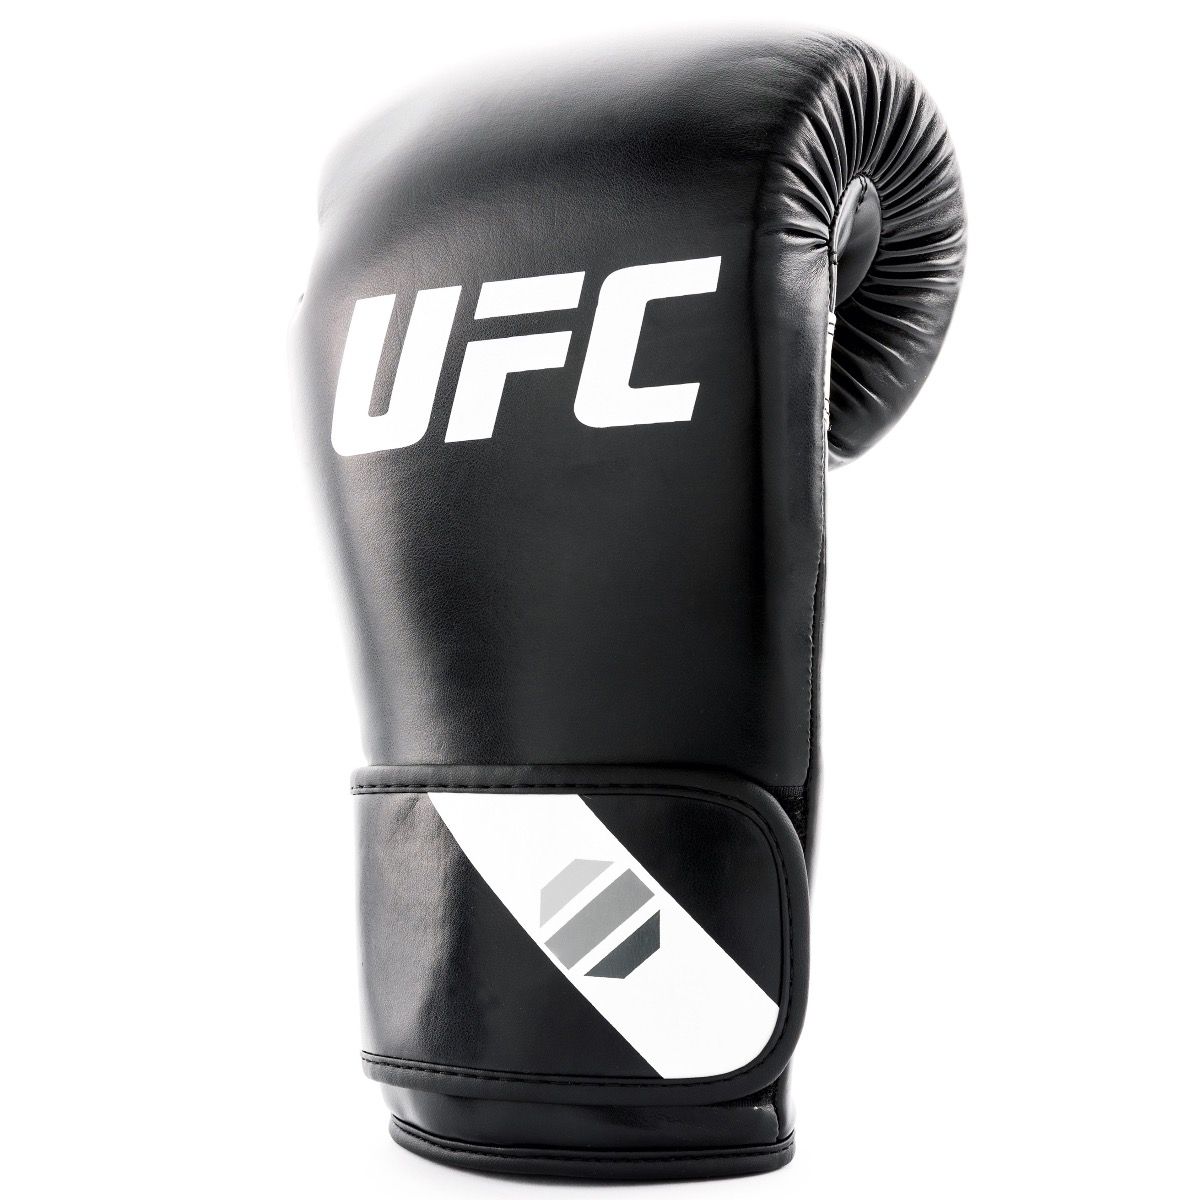 UFC Fitness Training Glove 8oz, schwarz/weiß/silber